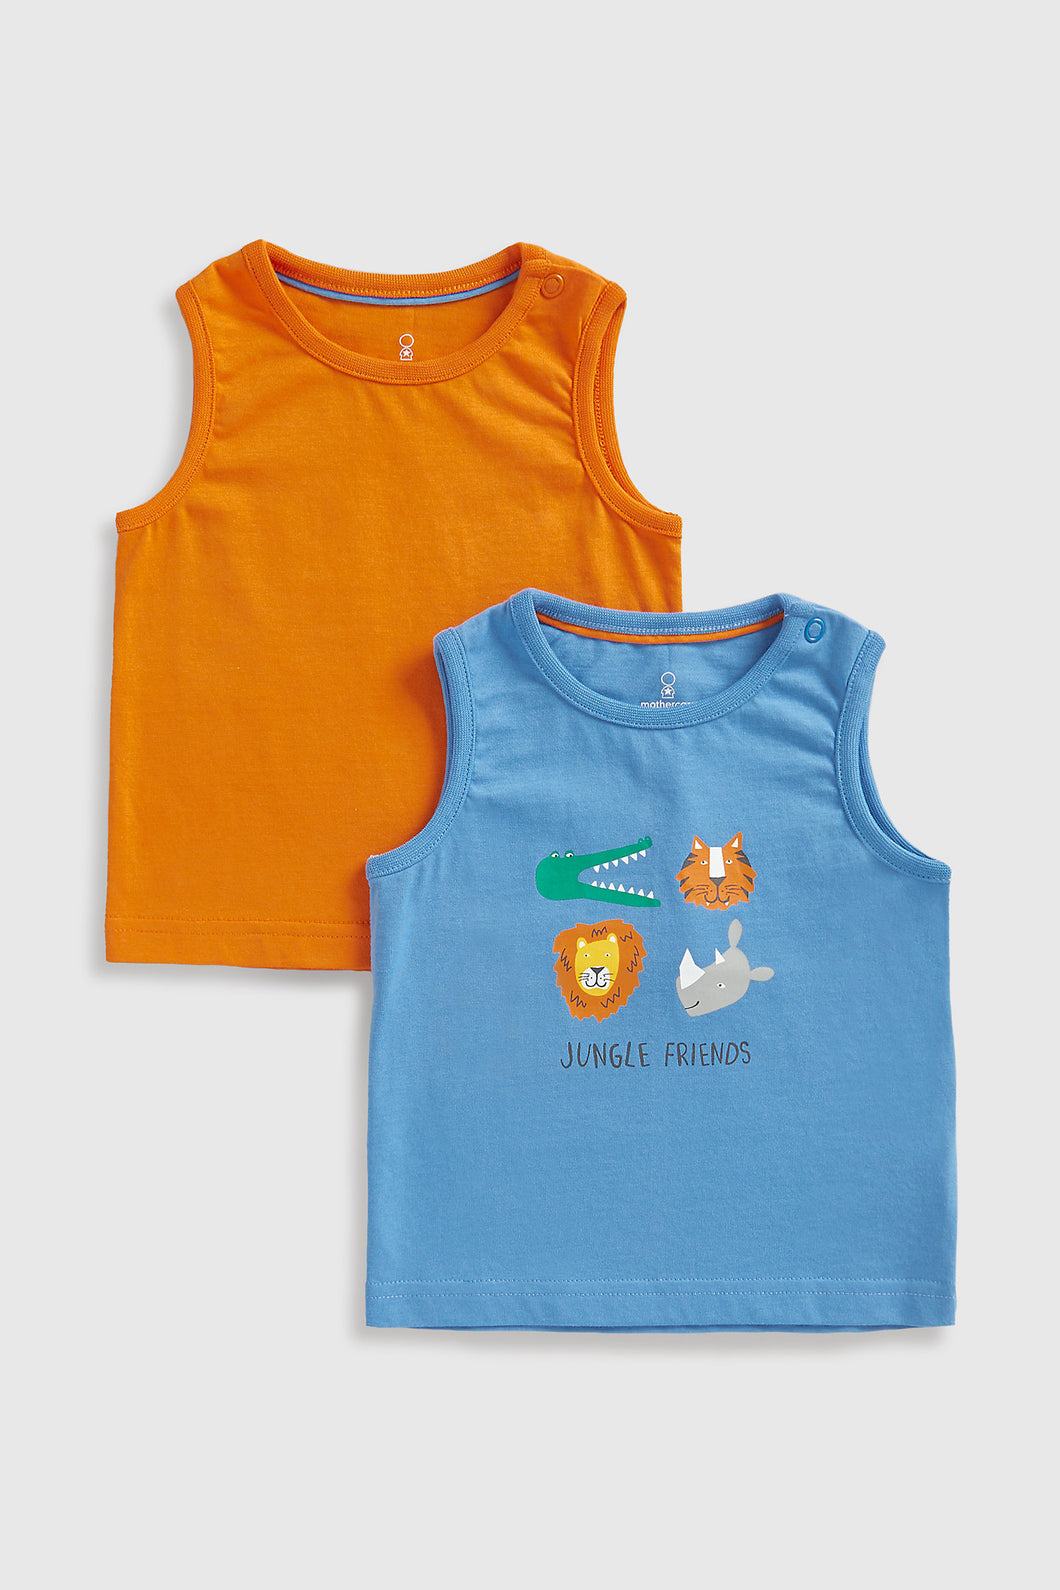 Mothercare Jungle Friends Vest T-Shirts - 2 Pack